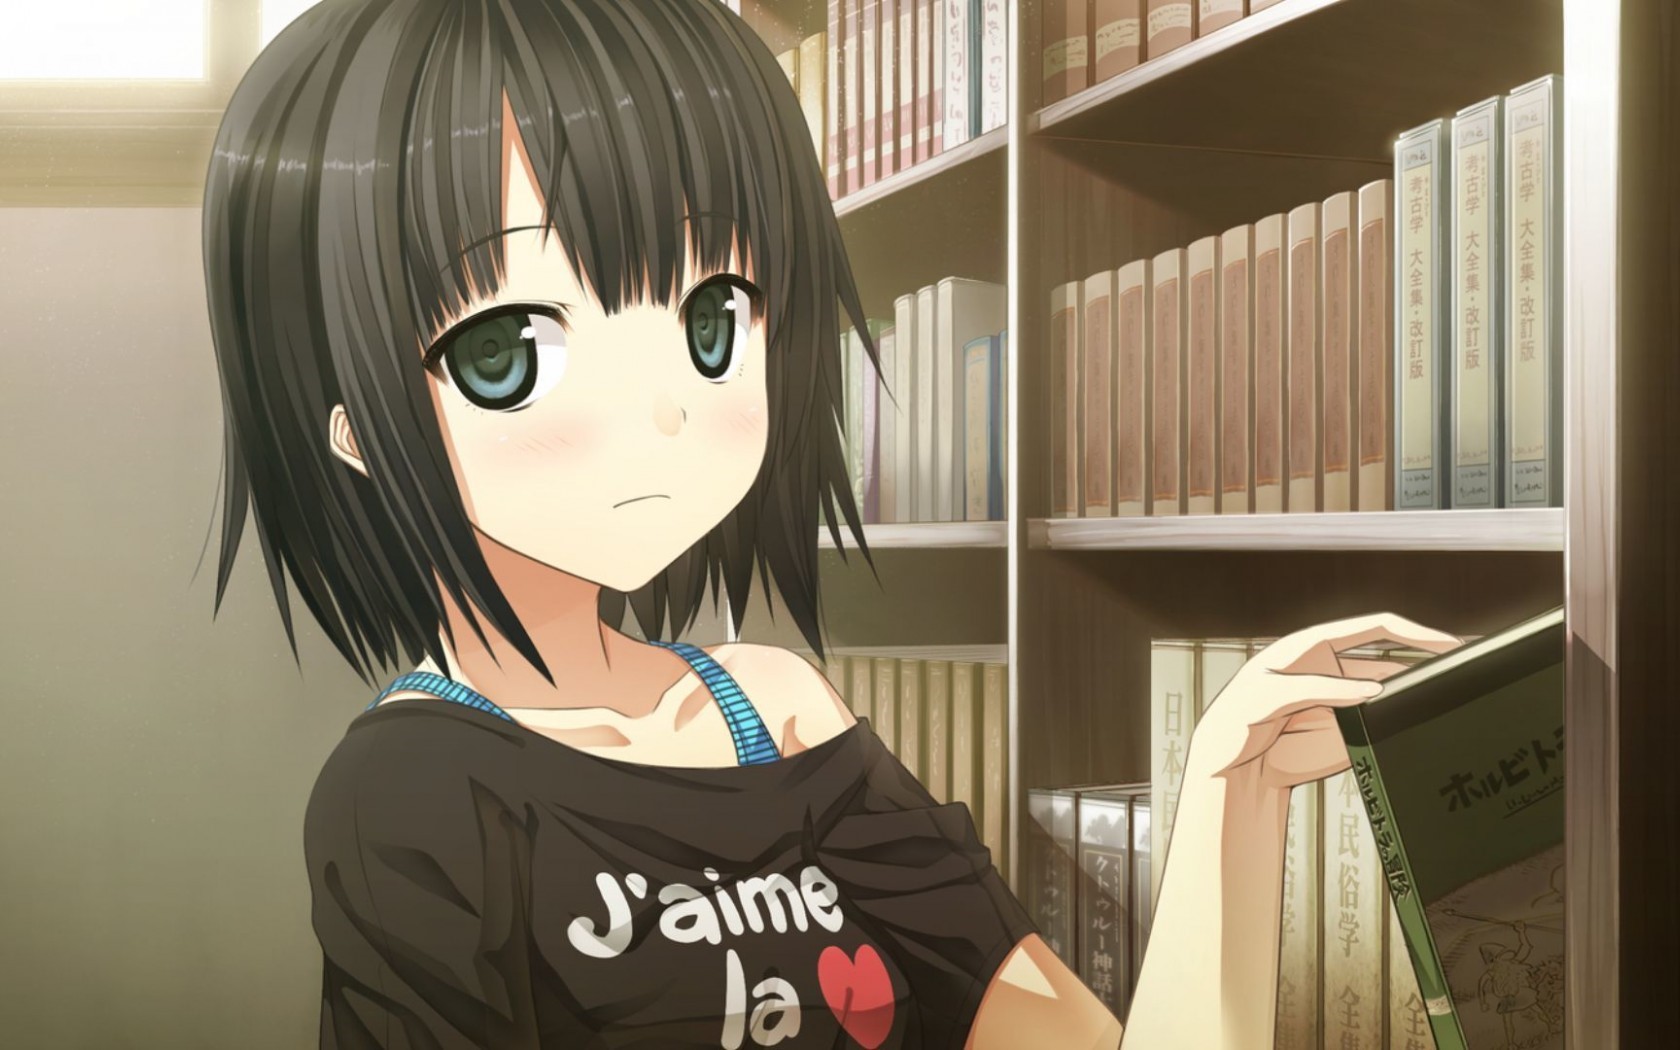 1680x1050 Anime, Girl, Shelf, Books, Study wallpaper JPG